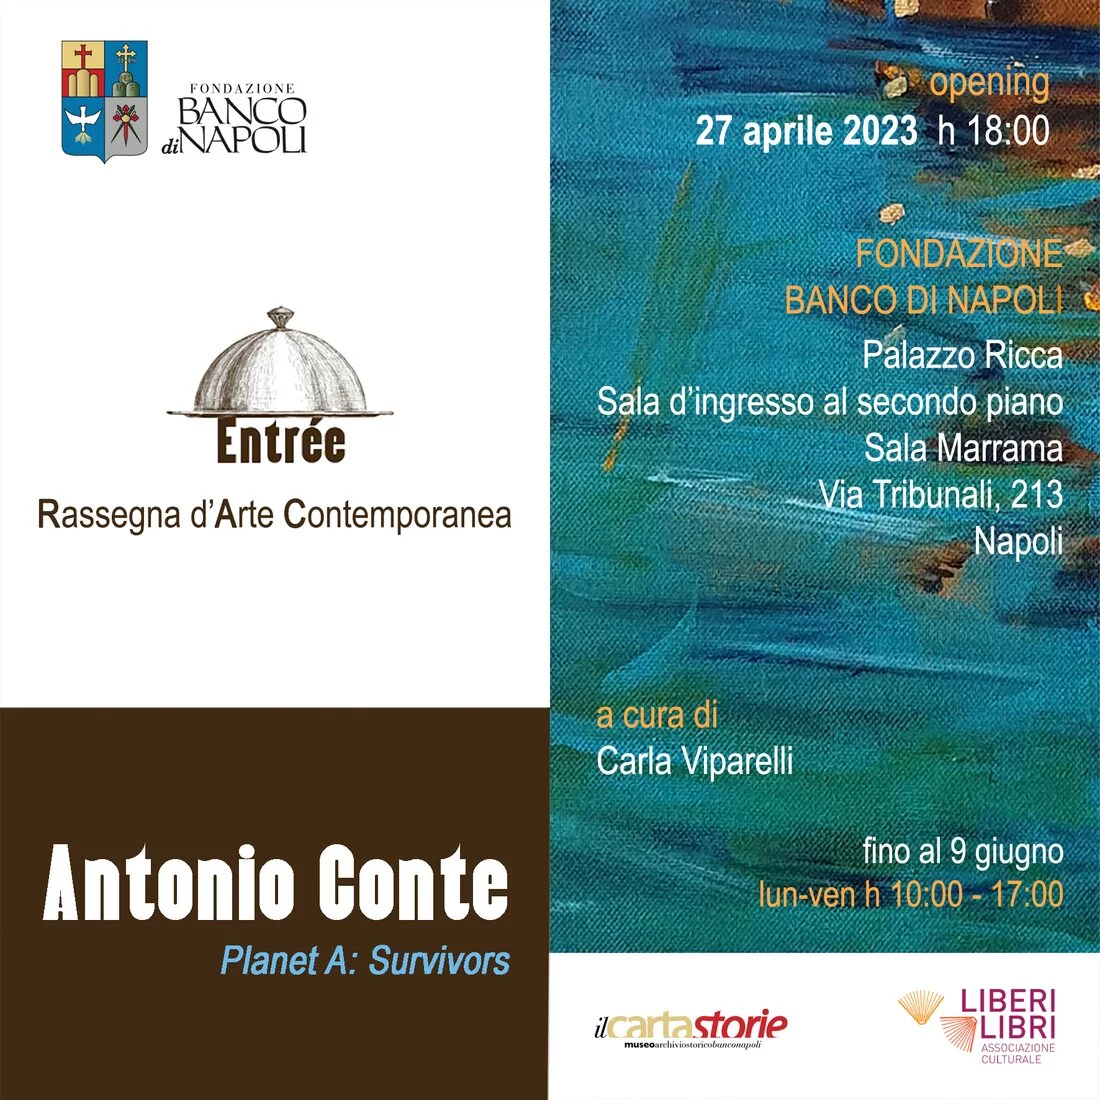 Antonio Conte. Planet A: Survivors